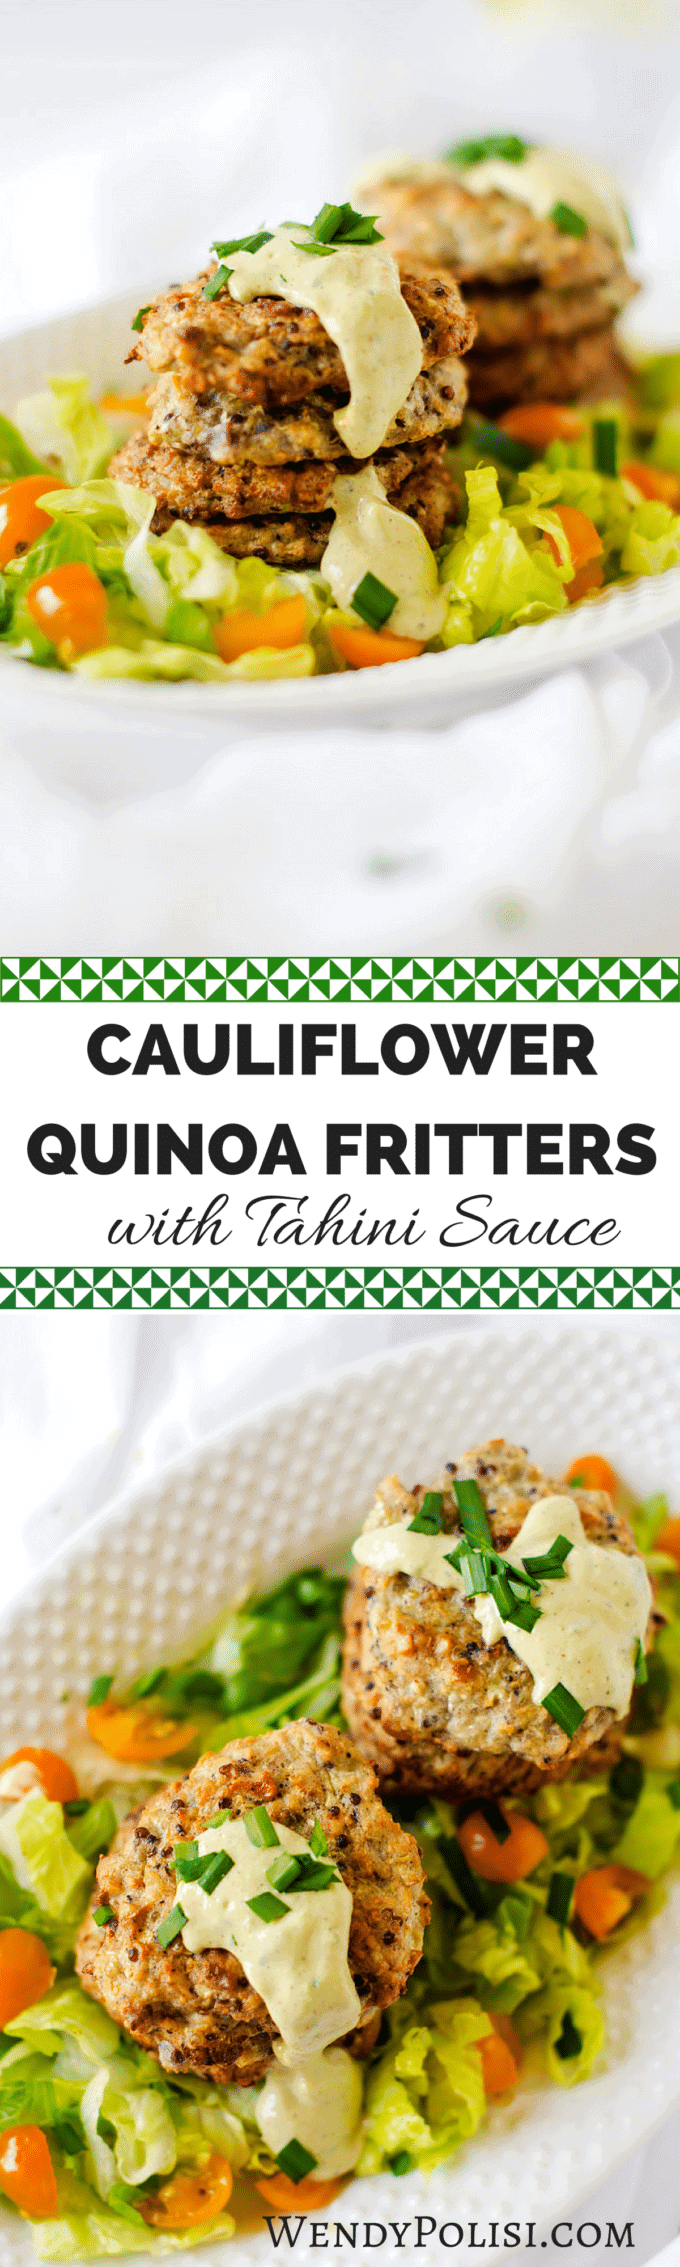 cauliflower quinoa fritters